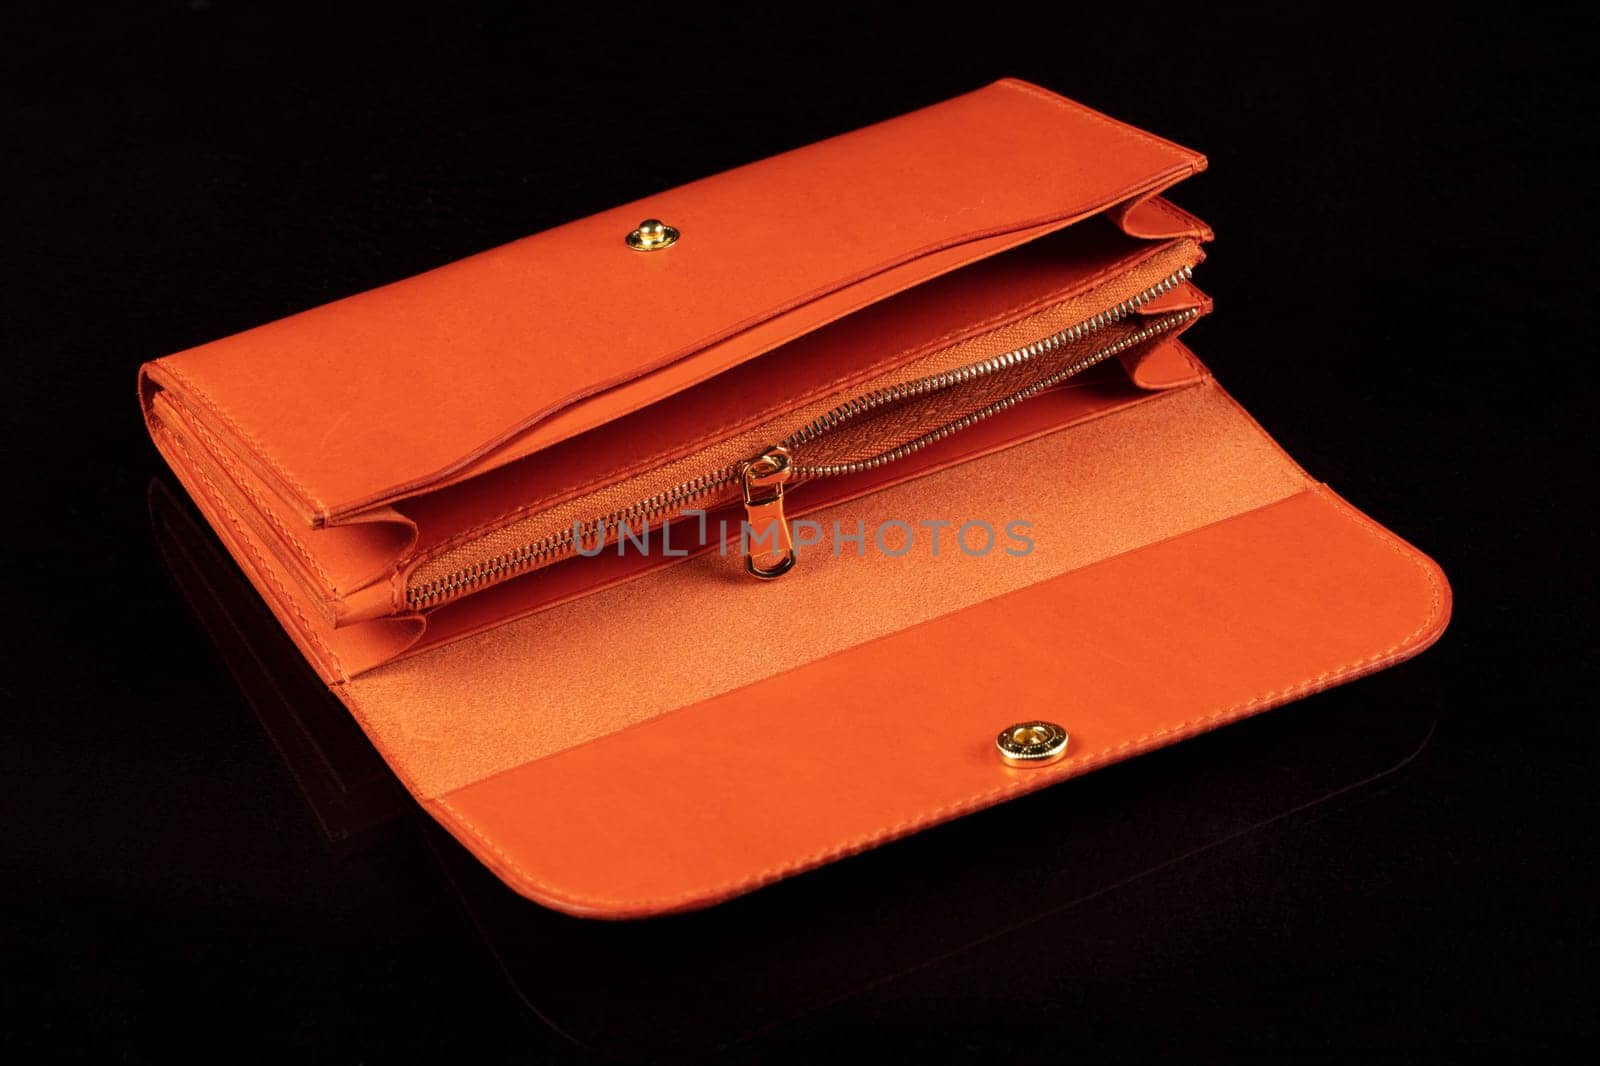 Orange leather open wallet on a dark background. by Sviatlana